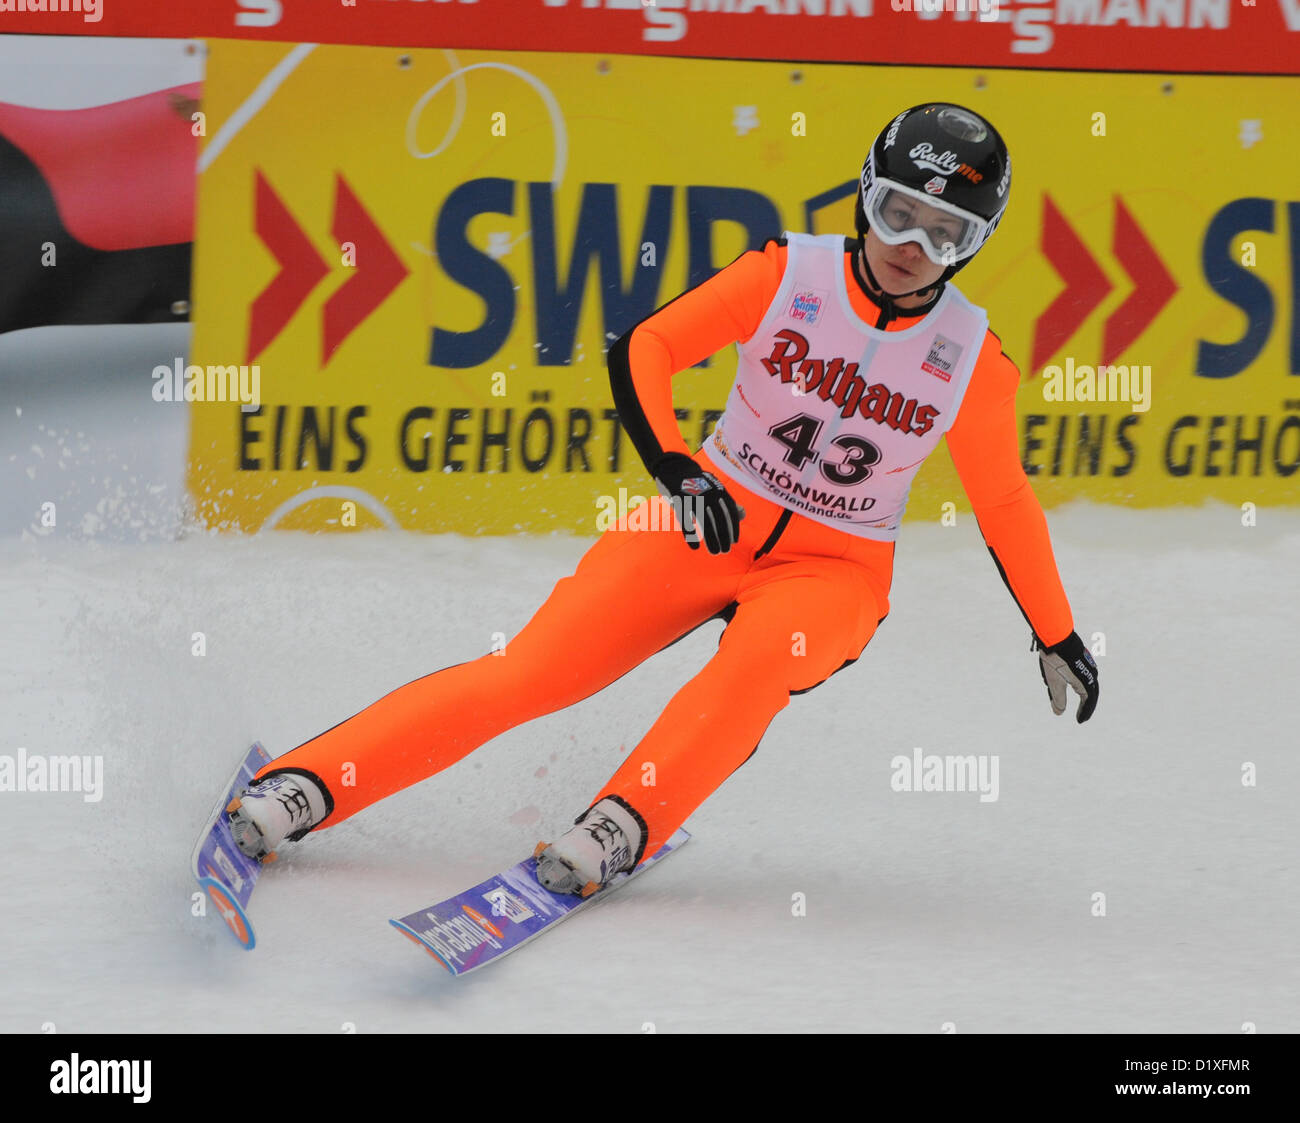 US-US-amerikanische Skispringerin Lindsey Van kommt an der Ziellinie nach der zweiten Runde aus der Langenwaldschanze der Skisprung-Weltcup in Schonach im Schwarzwald, Deutschland, 5. Januar 2013 Frauen. Foto: Patrick Seeger/dpa Stockfoto